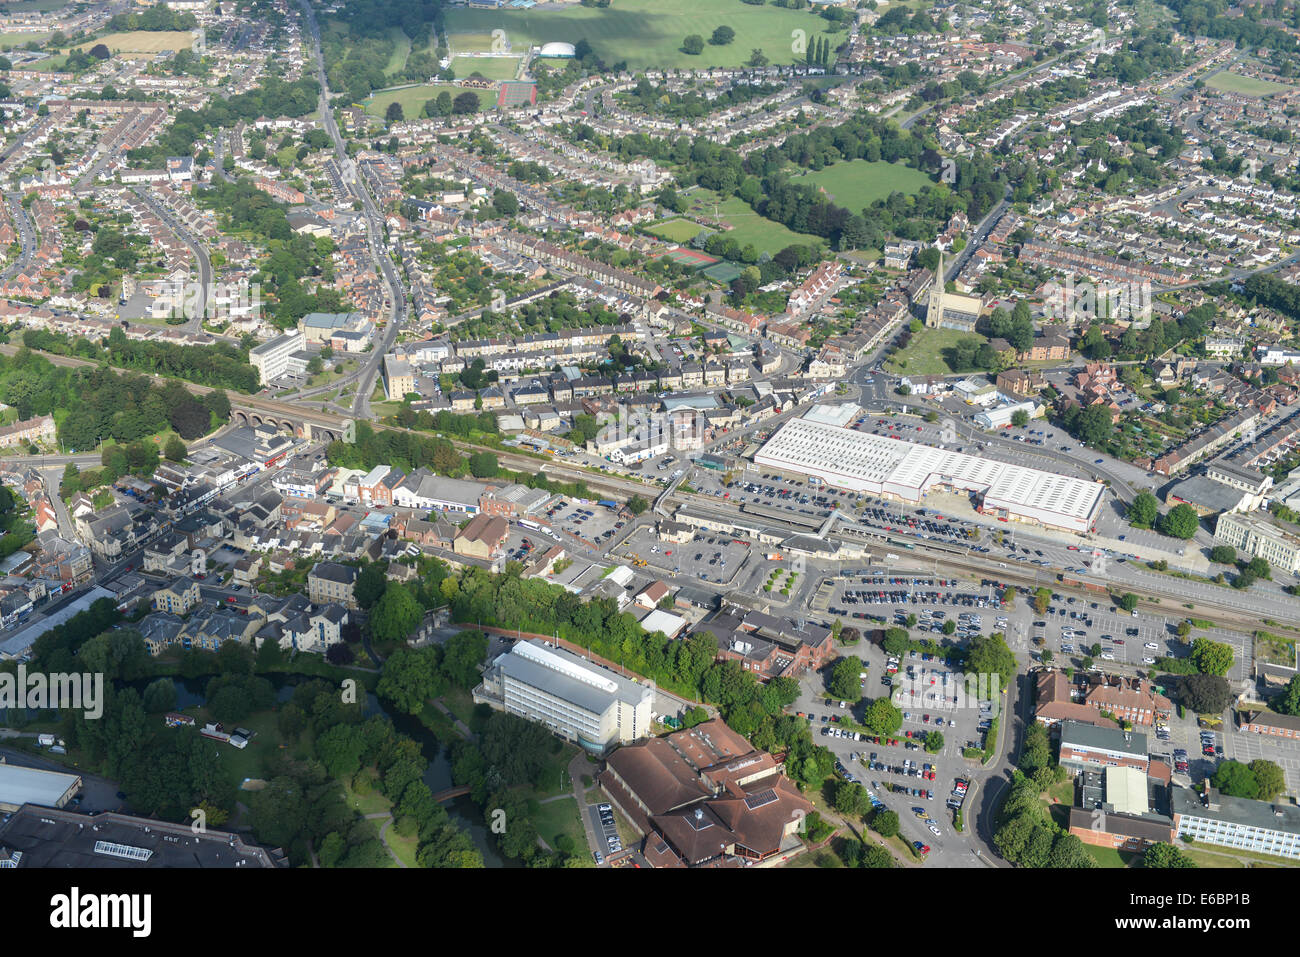 Eine Luftaufnahme von Chippenham in Wiltshire, UK, zeigt das Gebiet rund um die Eisenbahn-Bahnhof und dem Stadtzentrum entfernt. Stockfoto